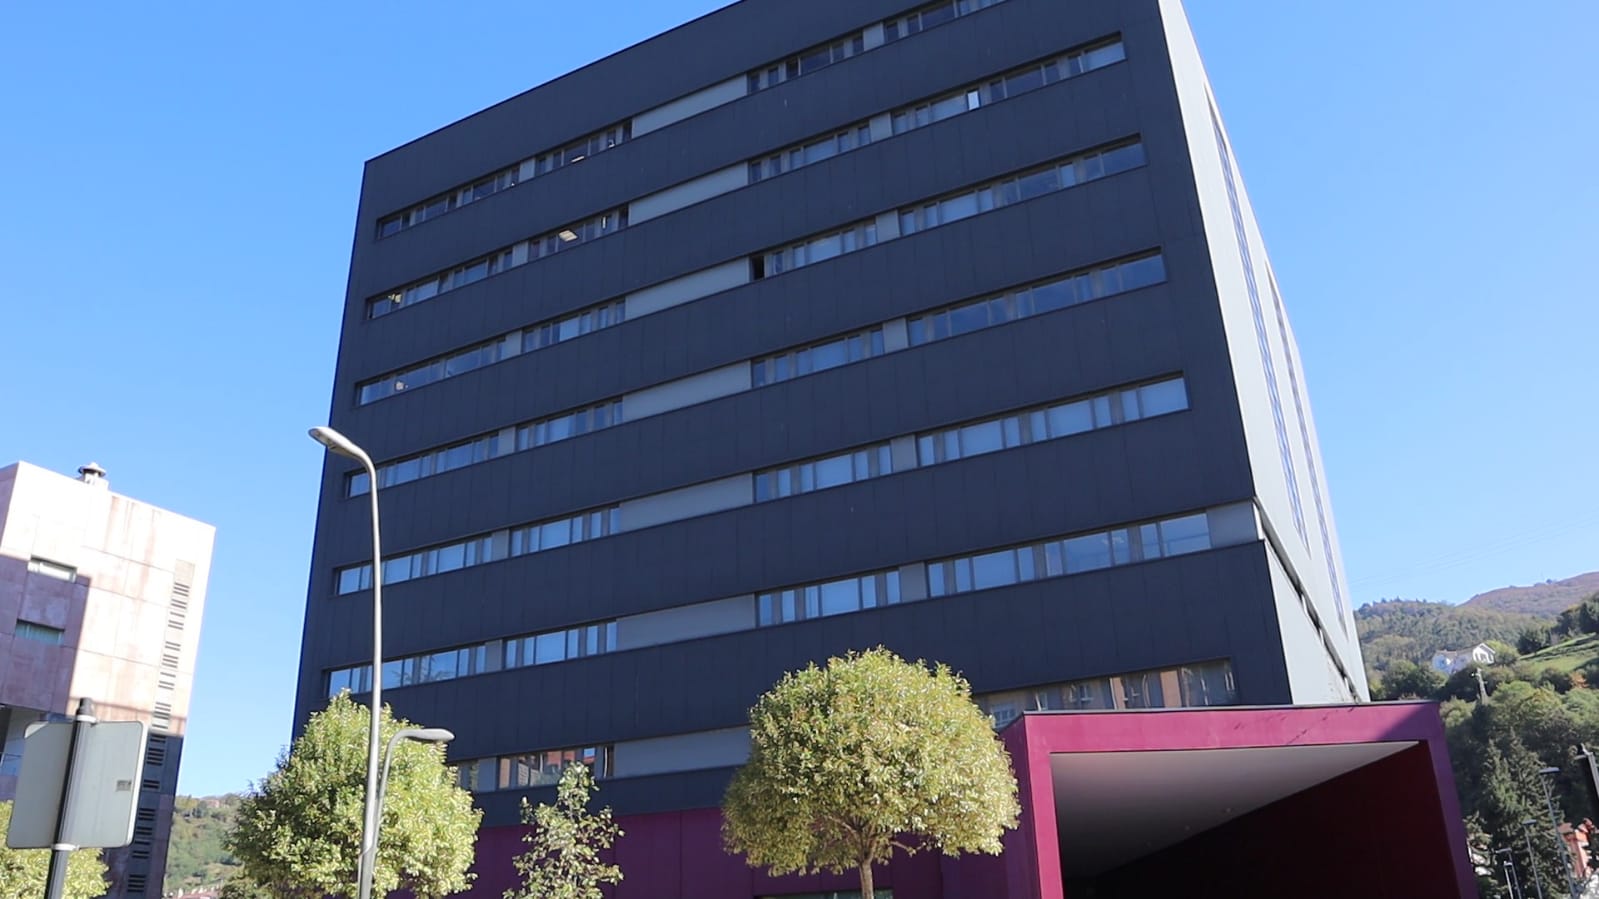 El nuevo centro se sitúa en el campus de Mieres de la Universidad de Oviedo. Imagen: CSIC